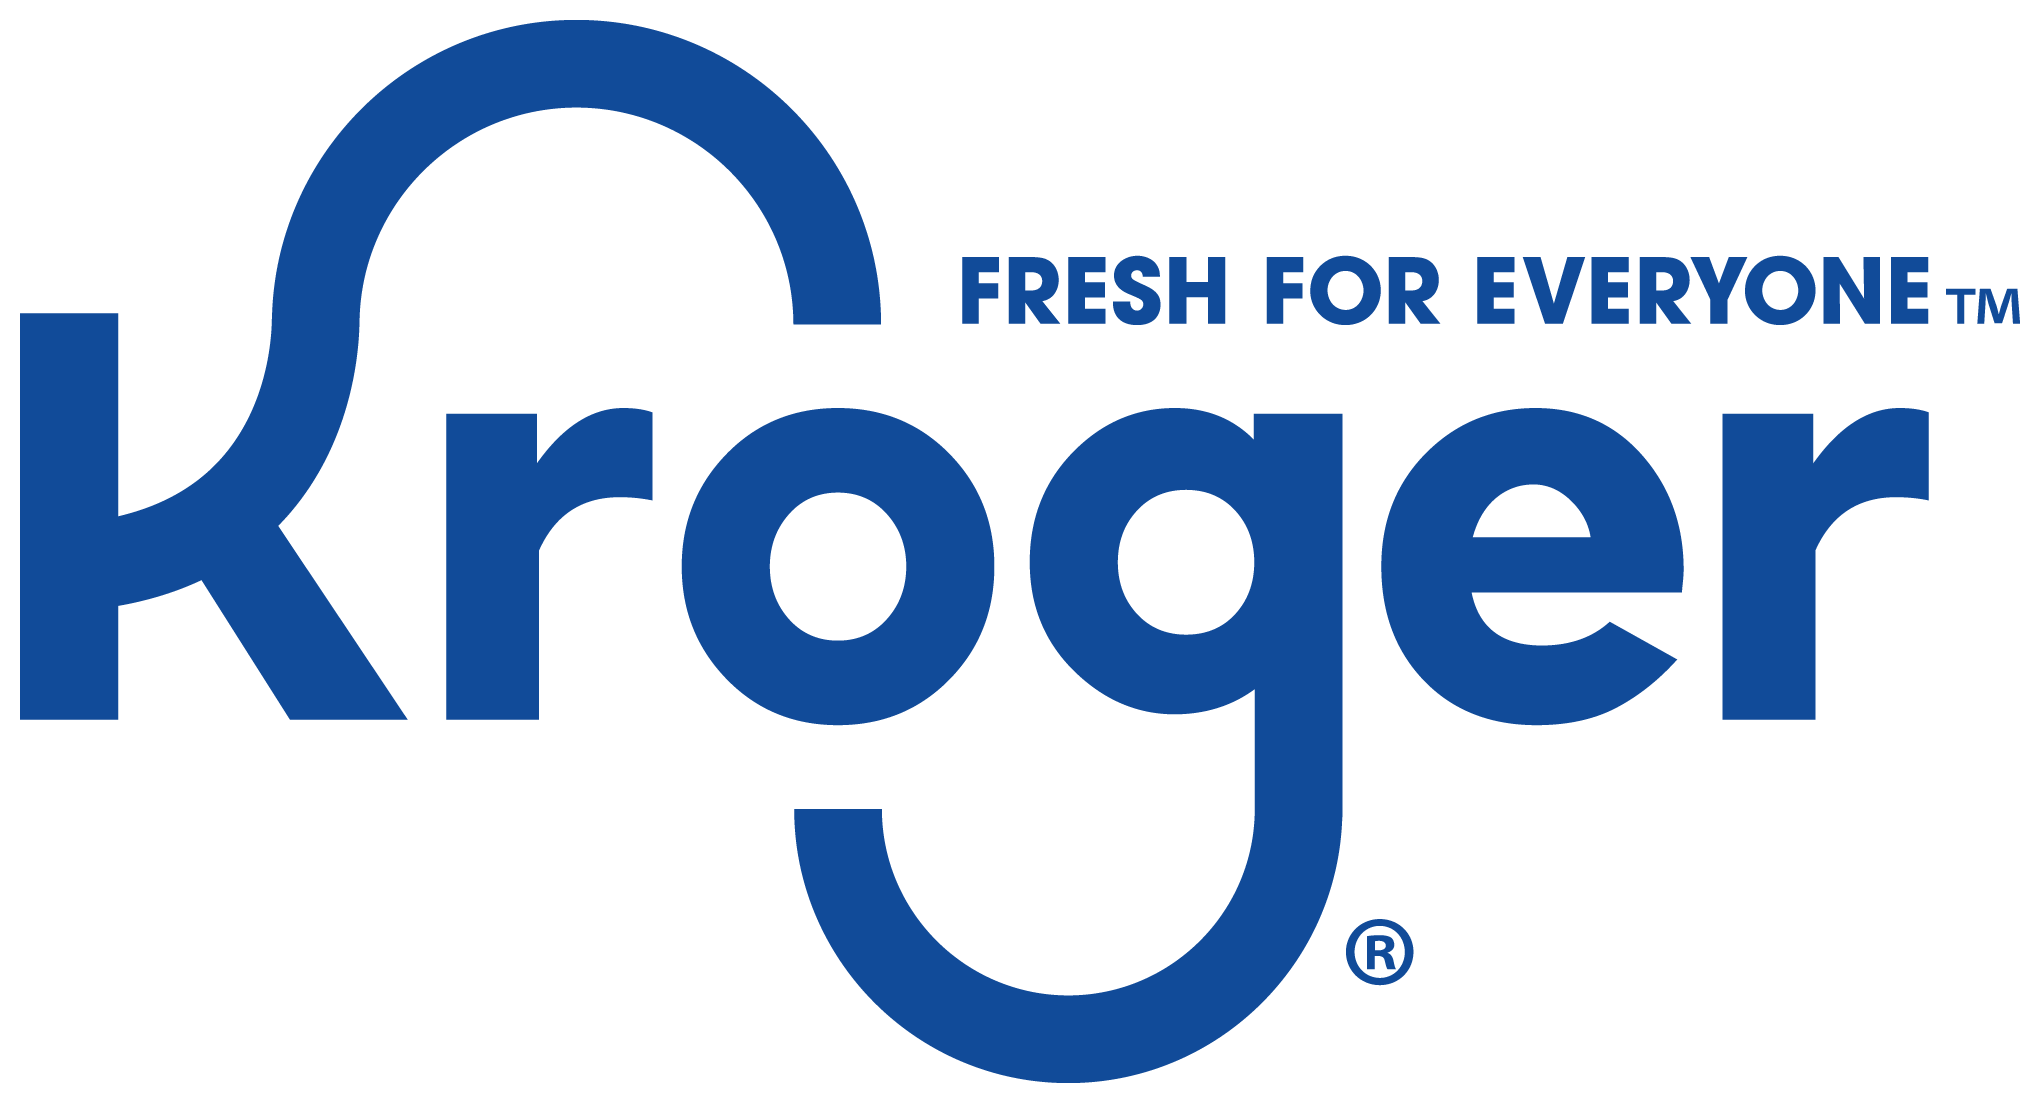 Kroger Brand Logo